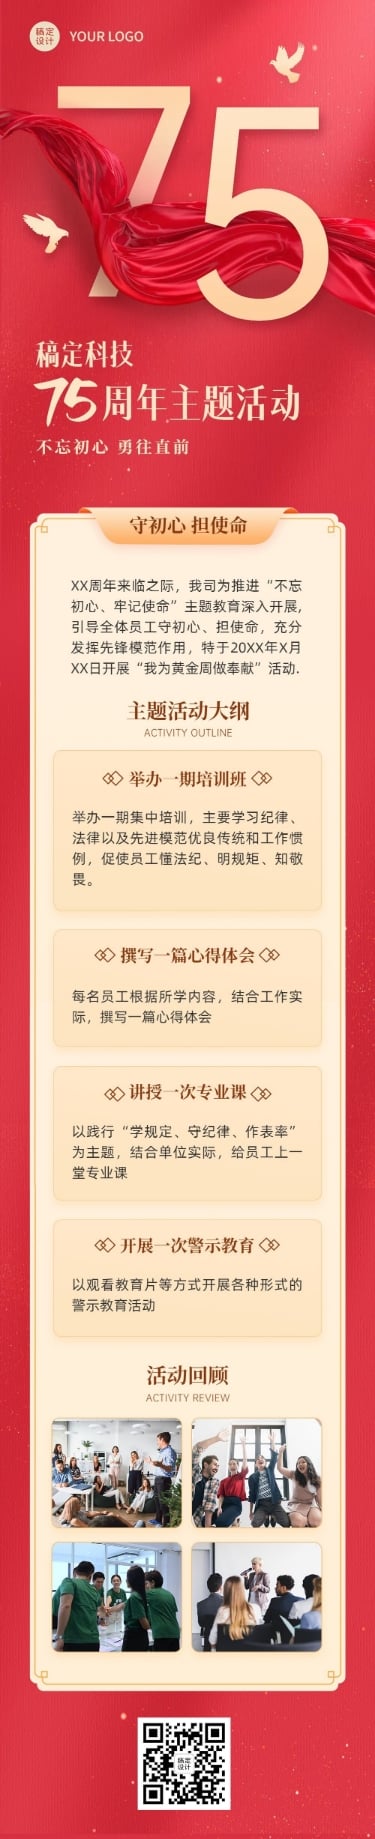 十一国庆节党政风主题活动文章长图